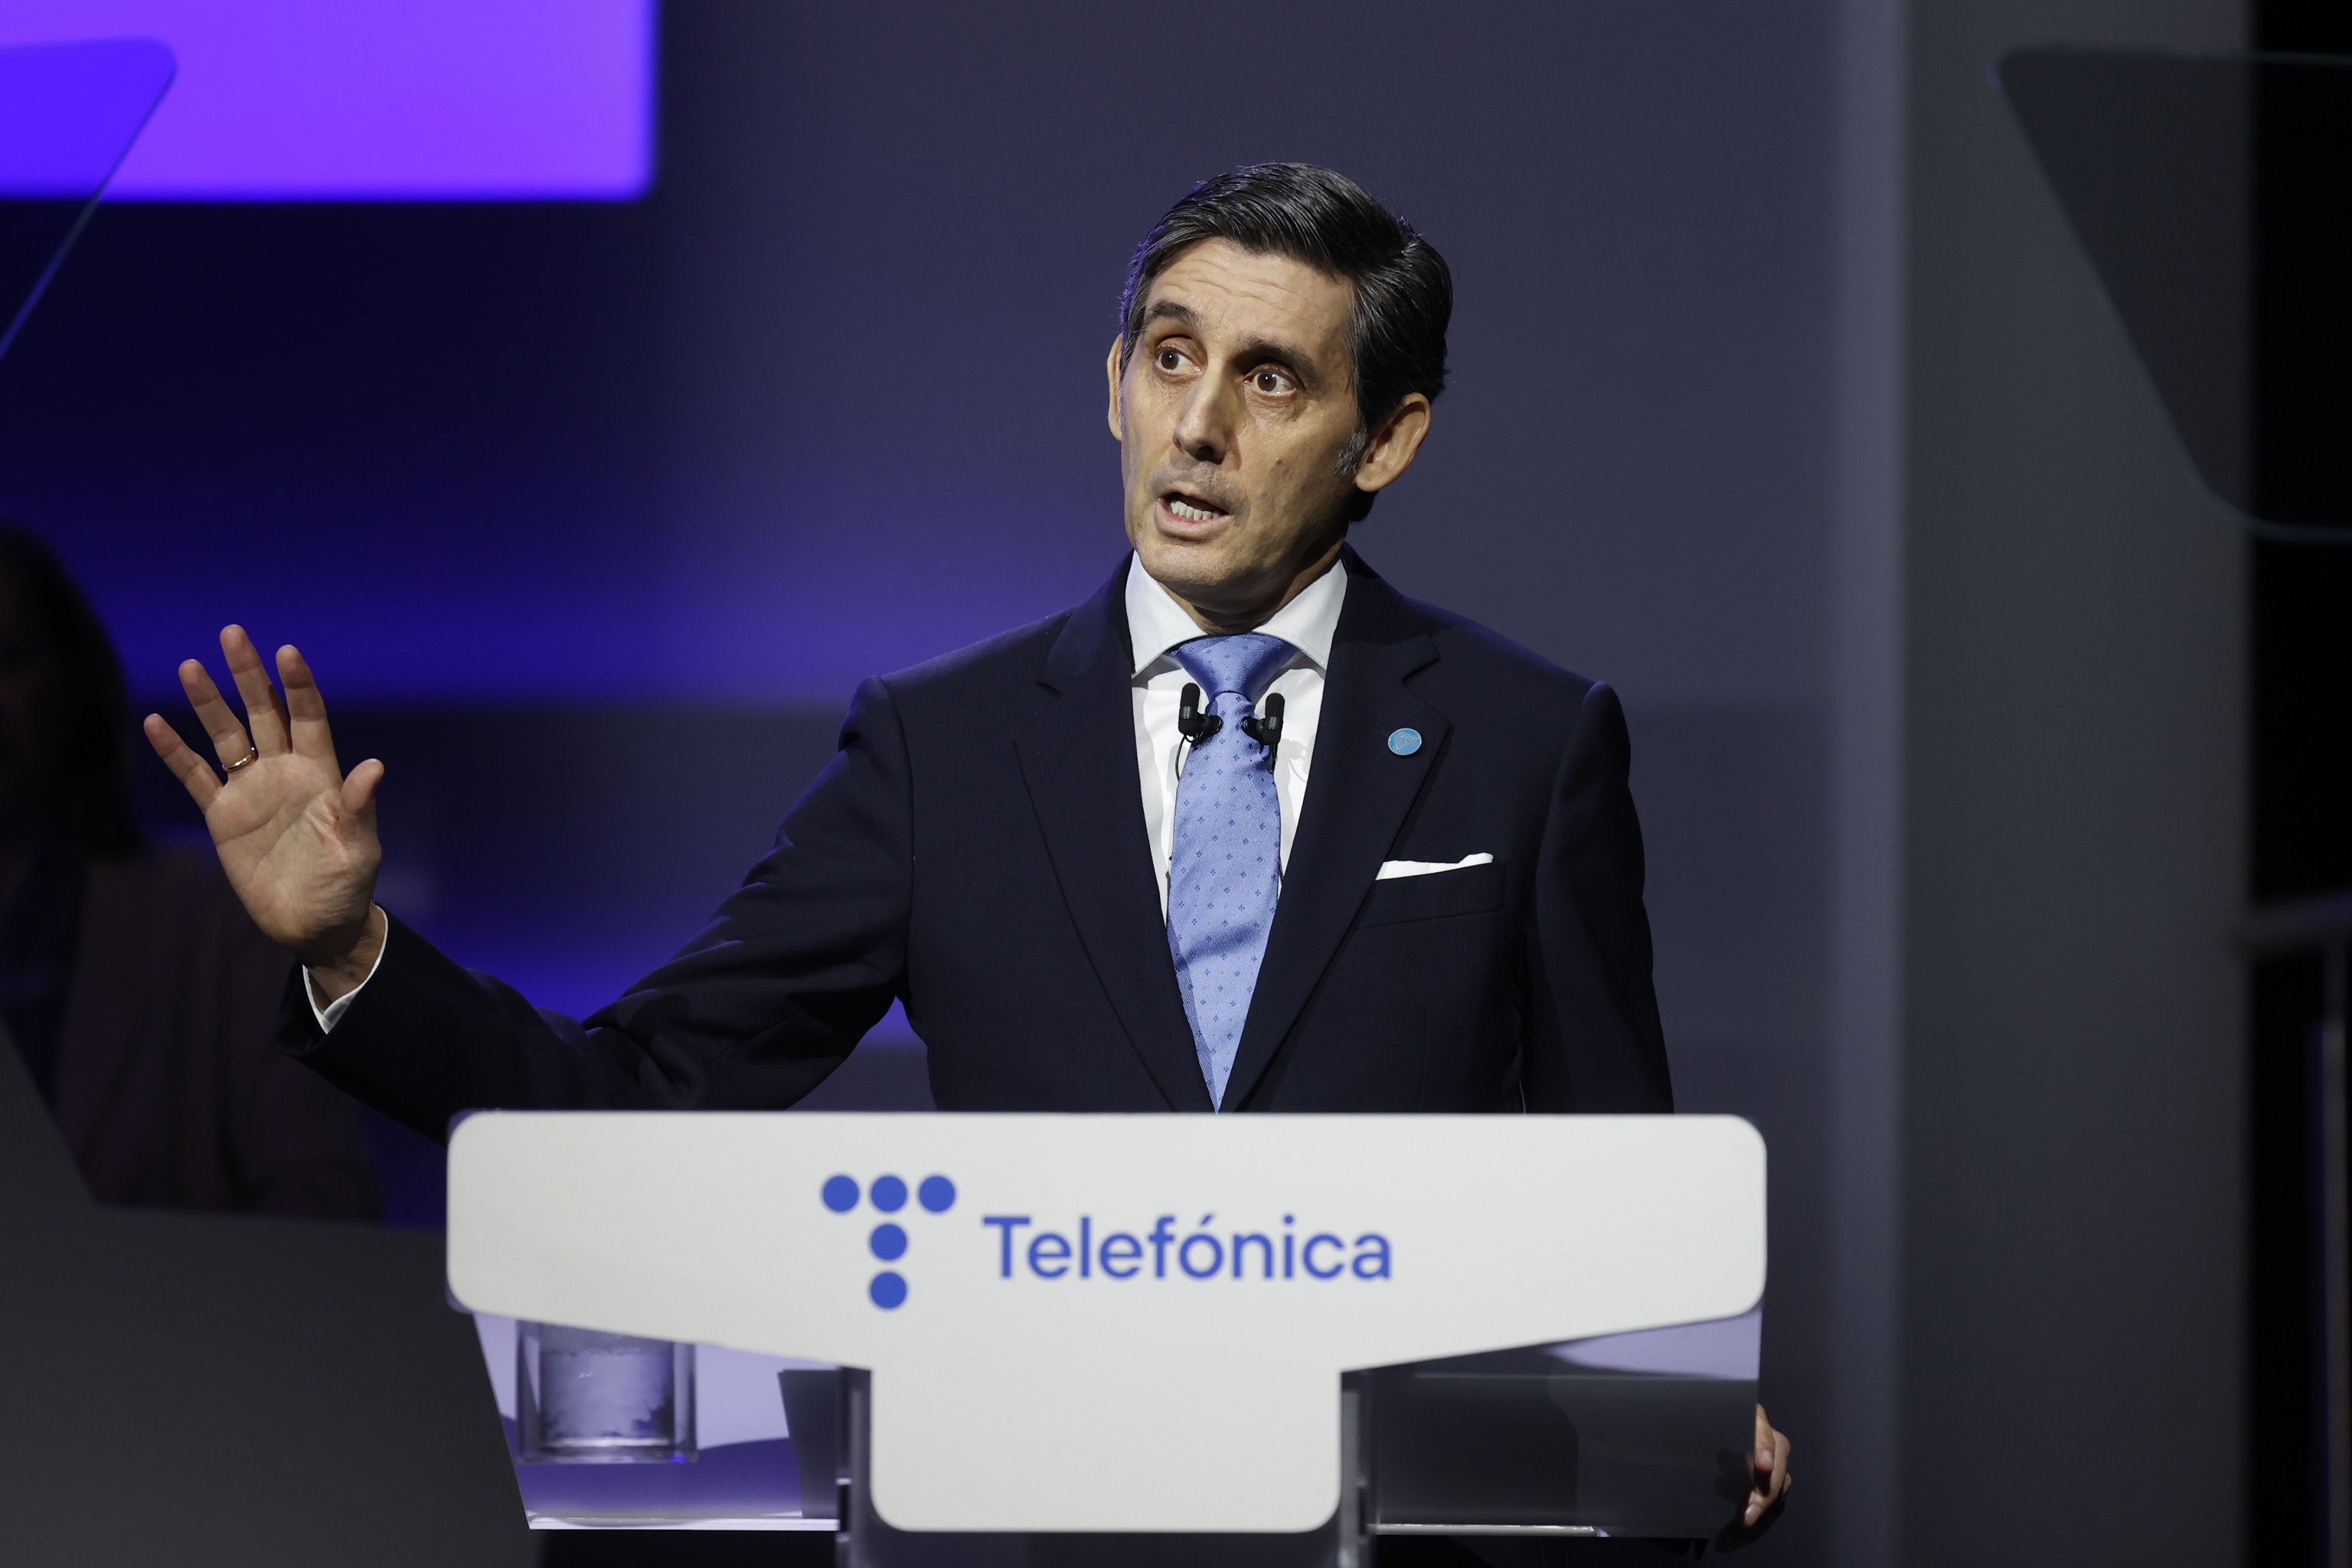 El presidente ejecutivo de Telefónica, José María Álvarez-Pallete.